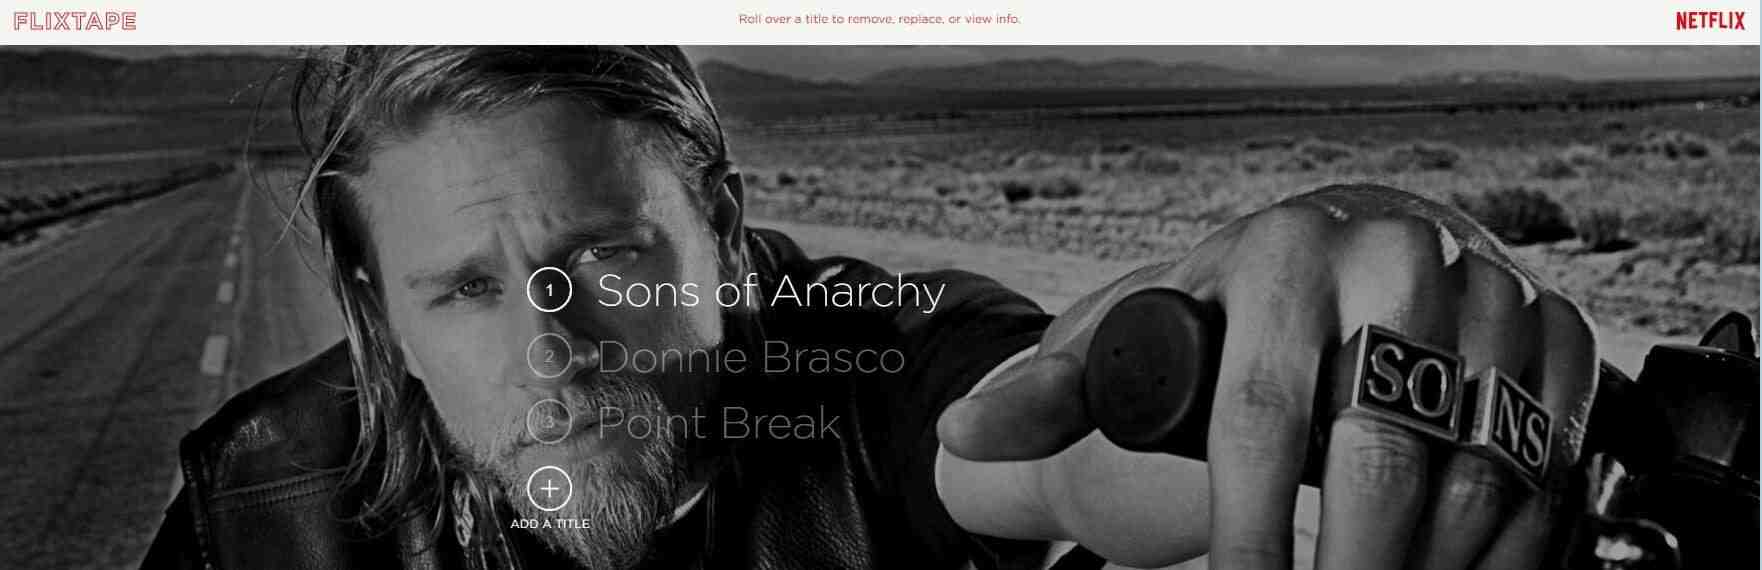 Pourquoi je ne trouve pas Sons of Anarchy sur Netflix ?